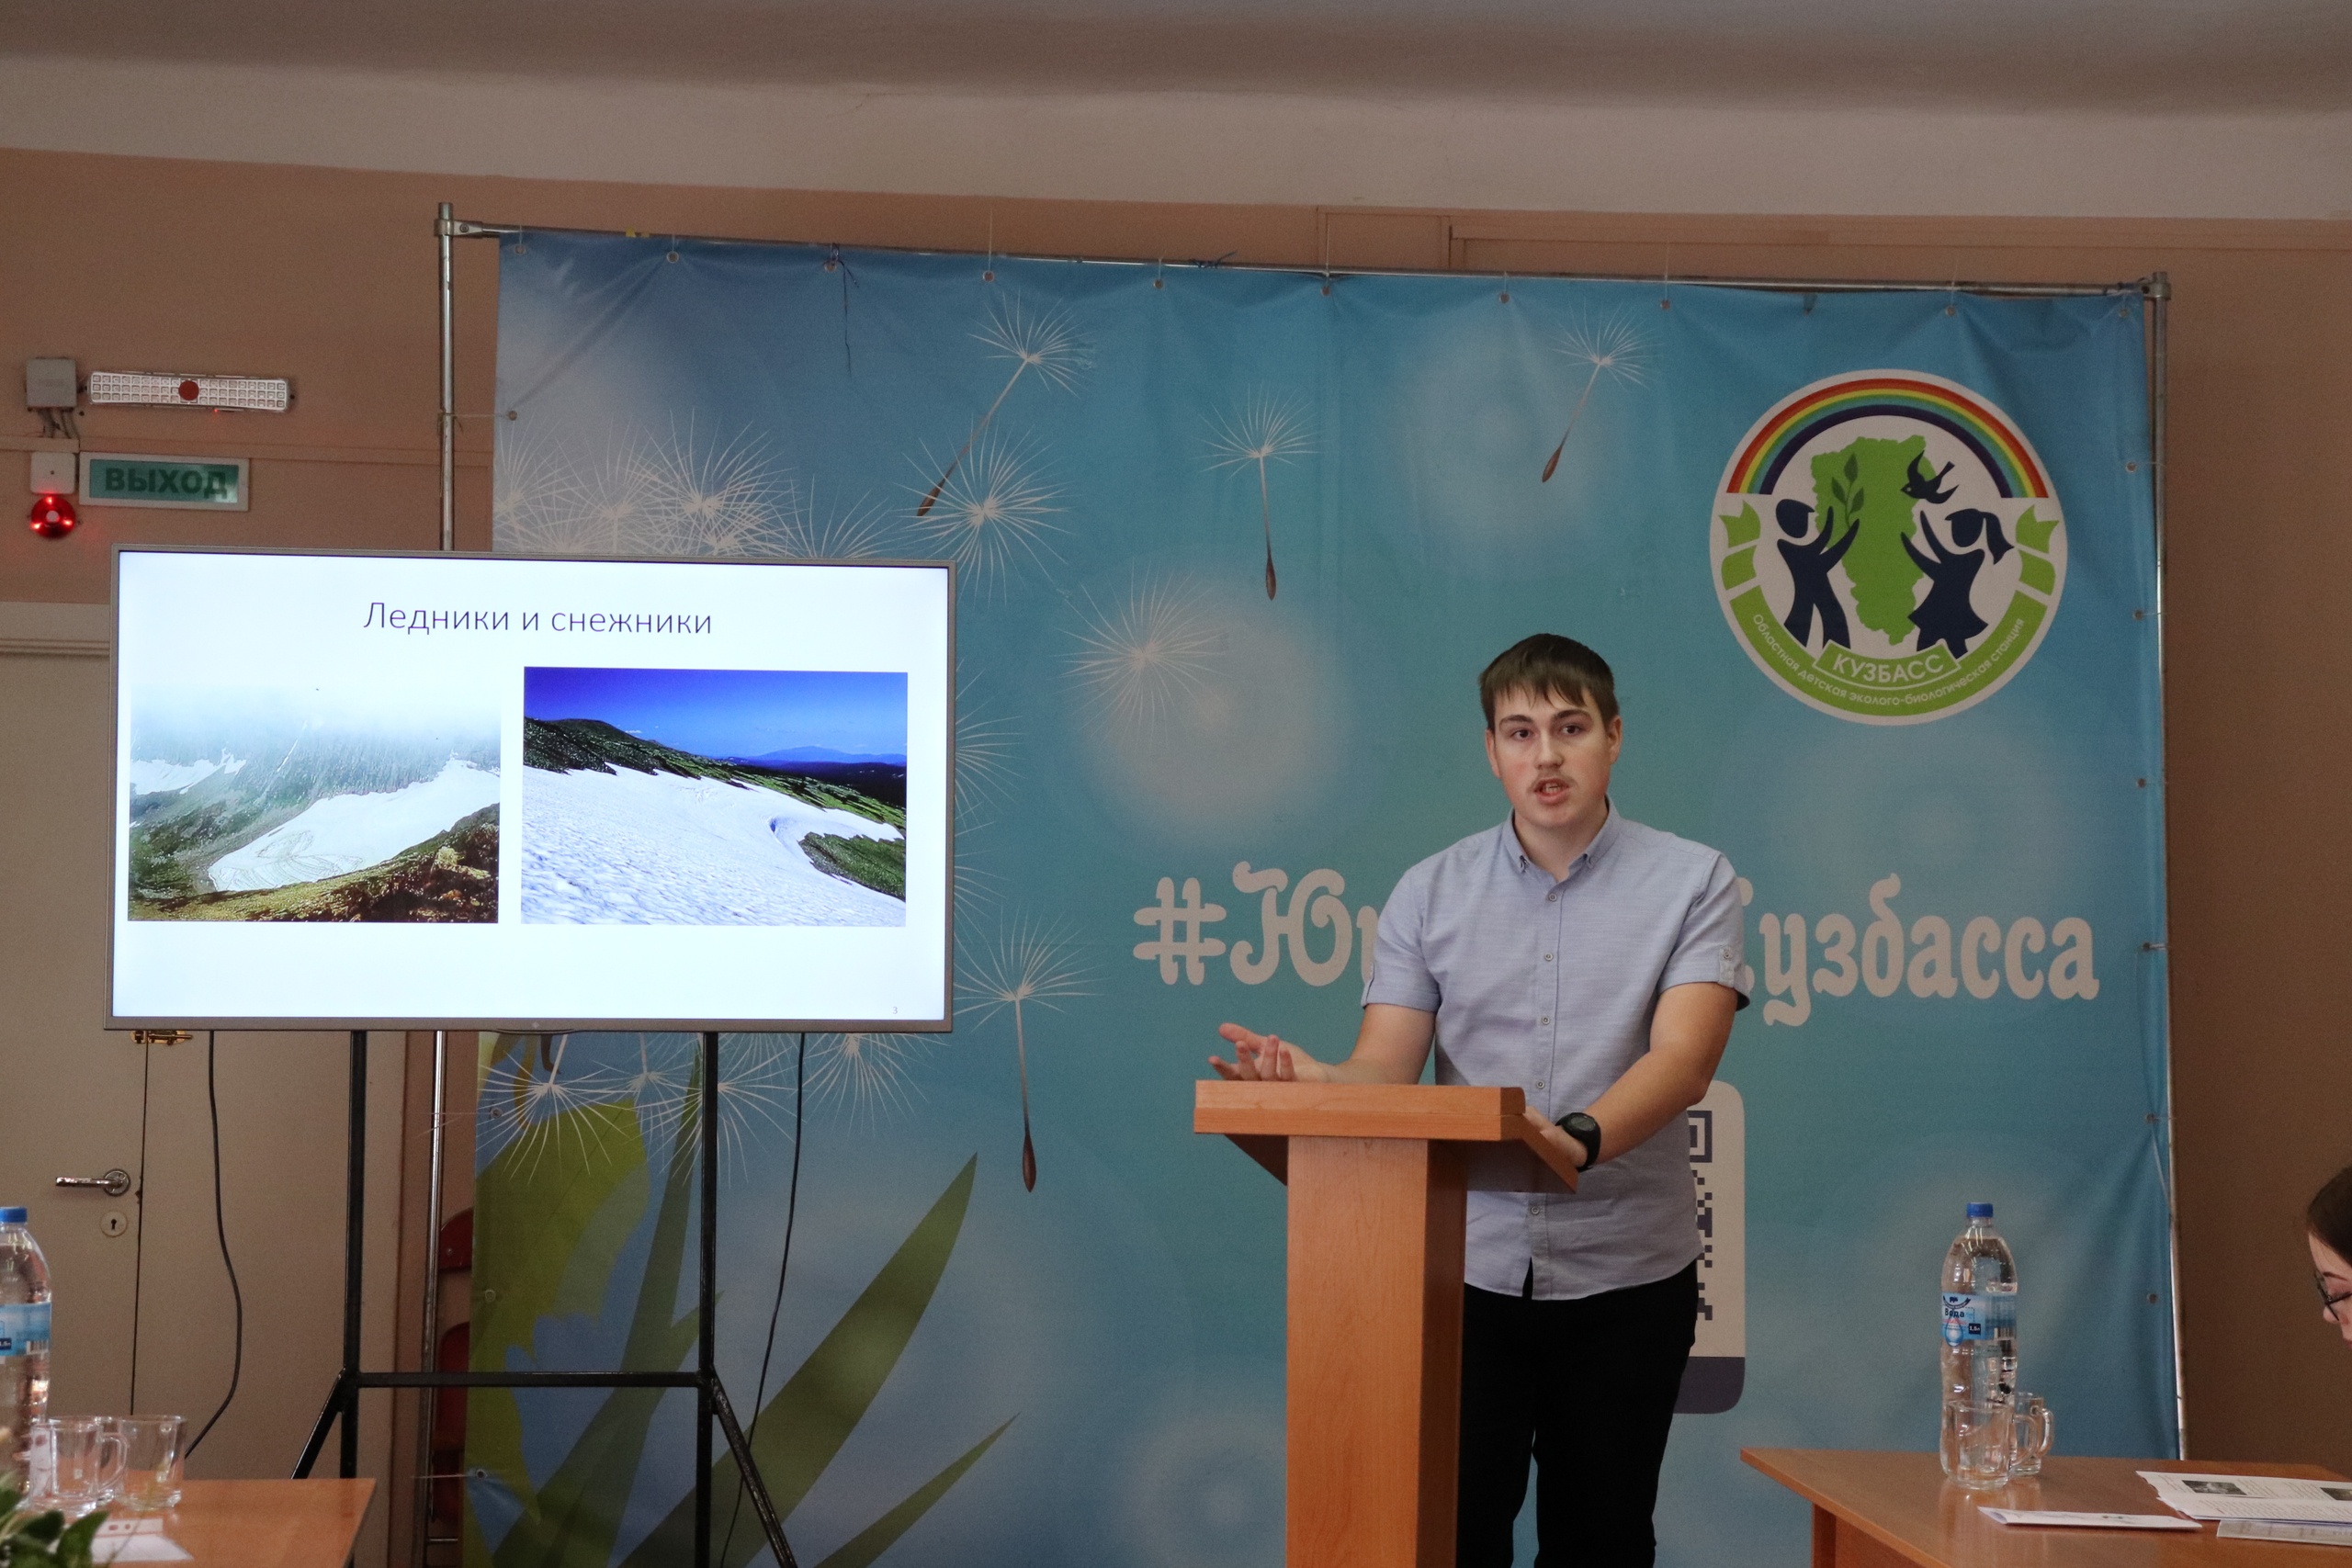 Кузбасский естественно-научный центр «Юннат» подвел итоги регионального этапа молодежного водного конкурса